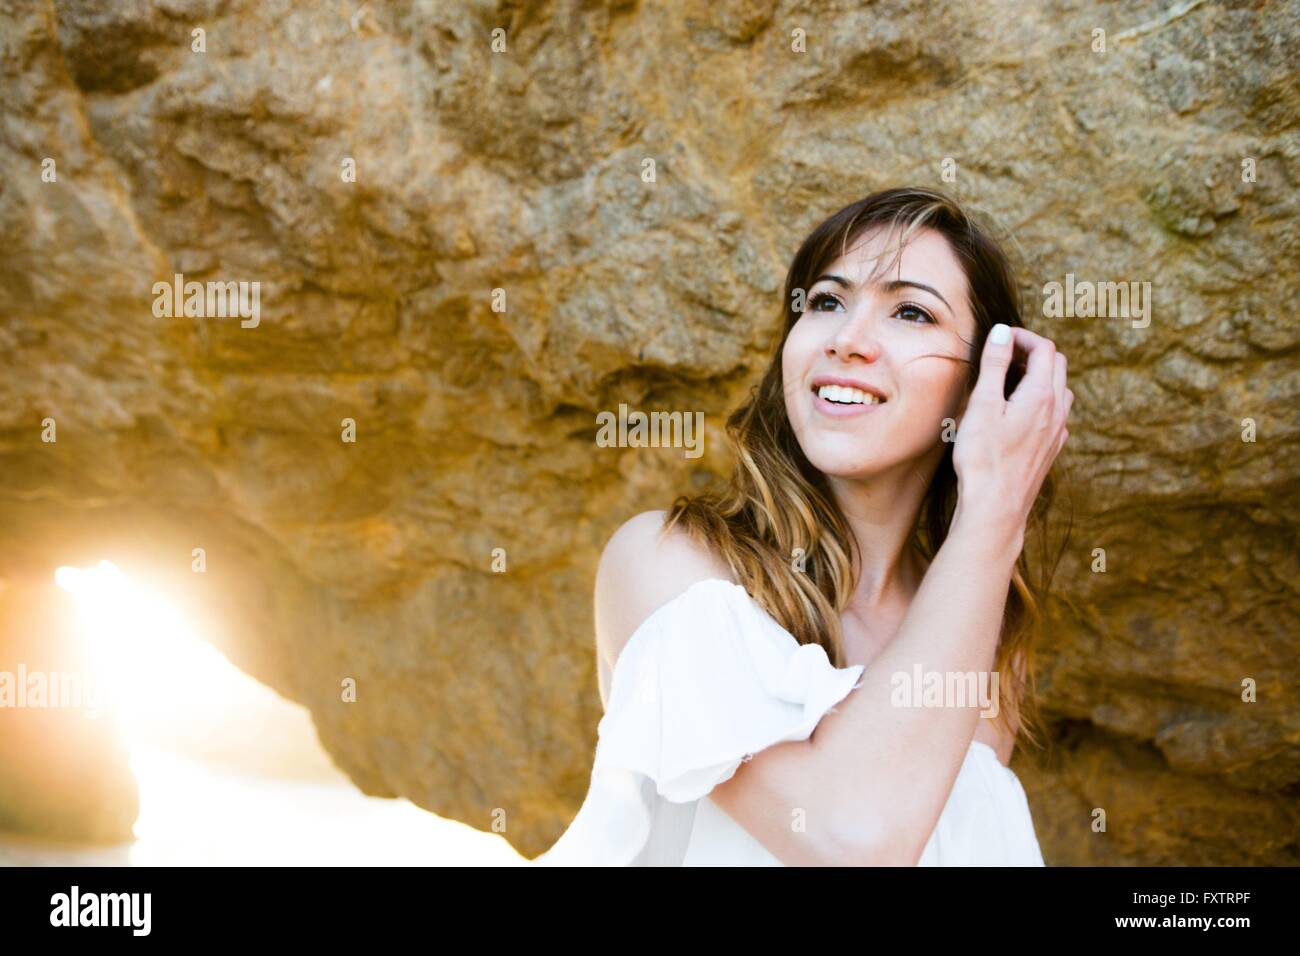 Mujer joven atar cabello detrás de formación rocosa Foto de stock